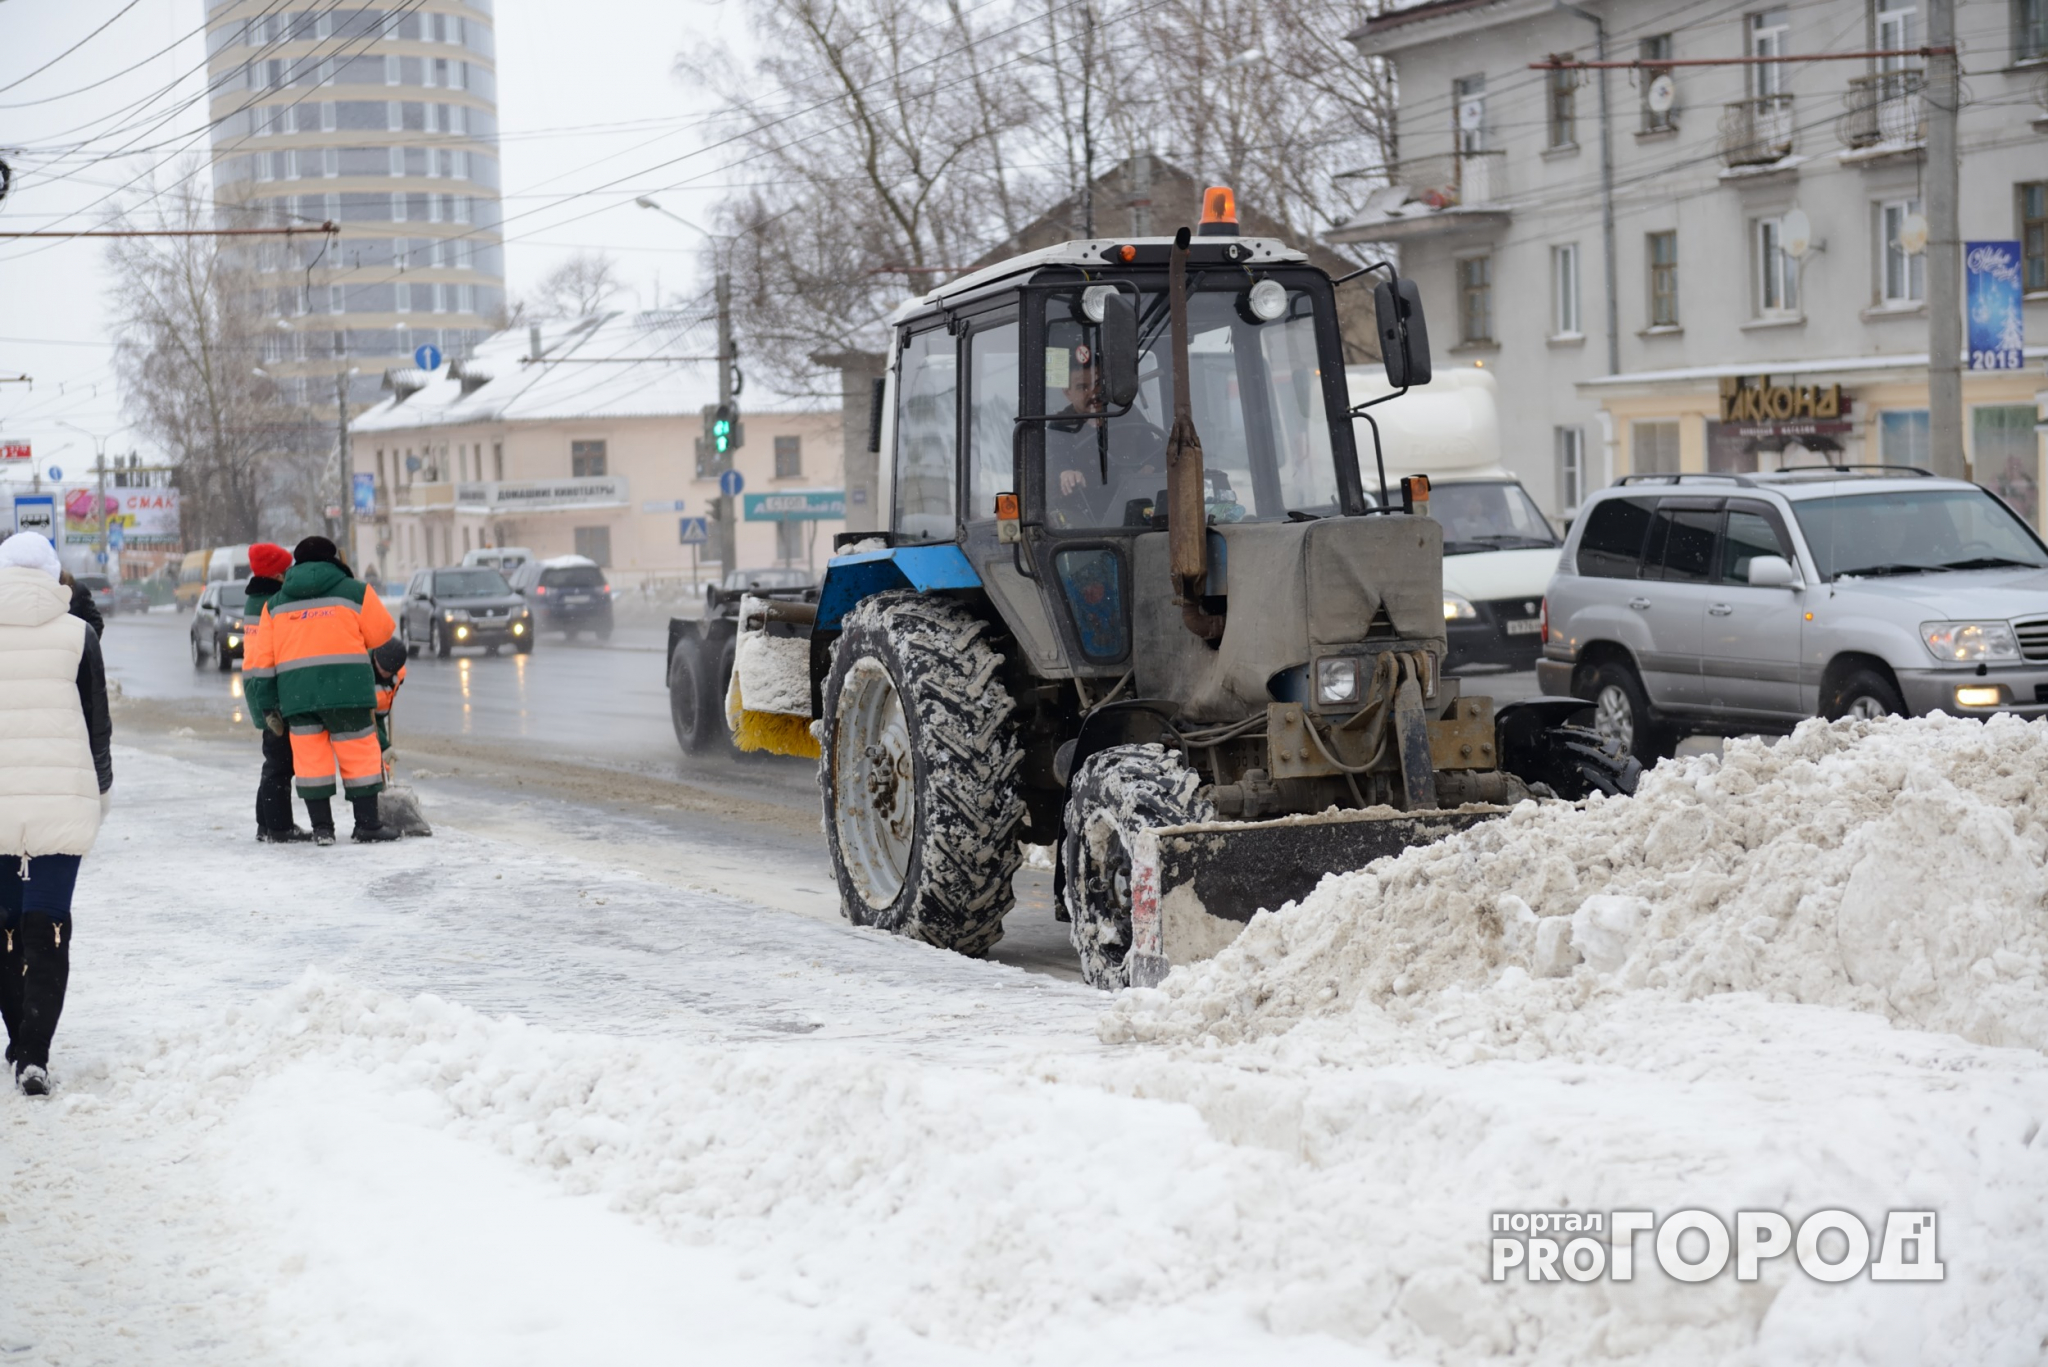 Мэр Ярославля распорядился зачистить дороги до асфальта